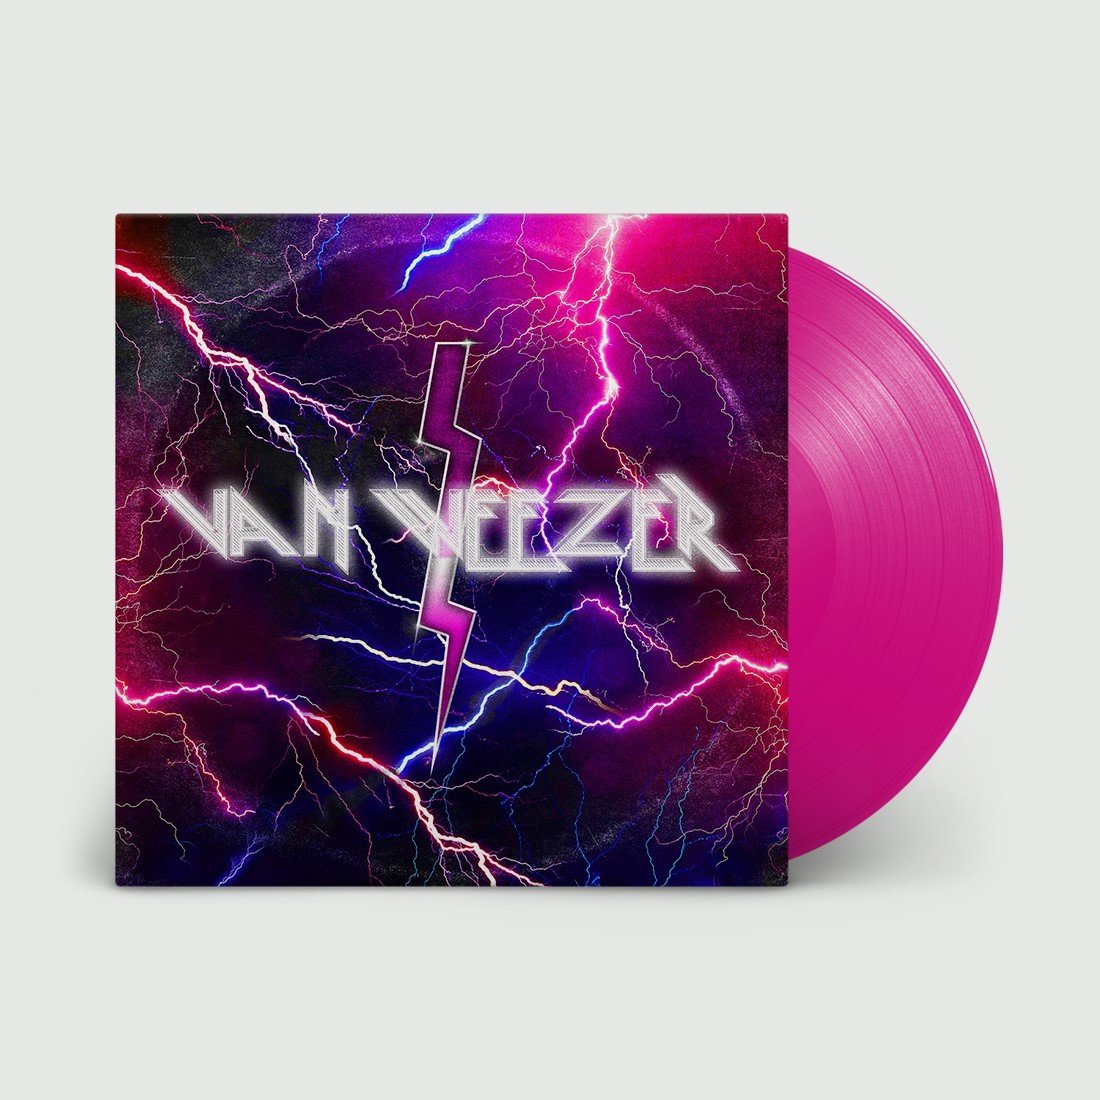 WEEZER - Van Weezer - LP - Limited Neon Magenta Vinyl